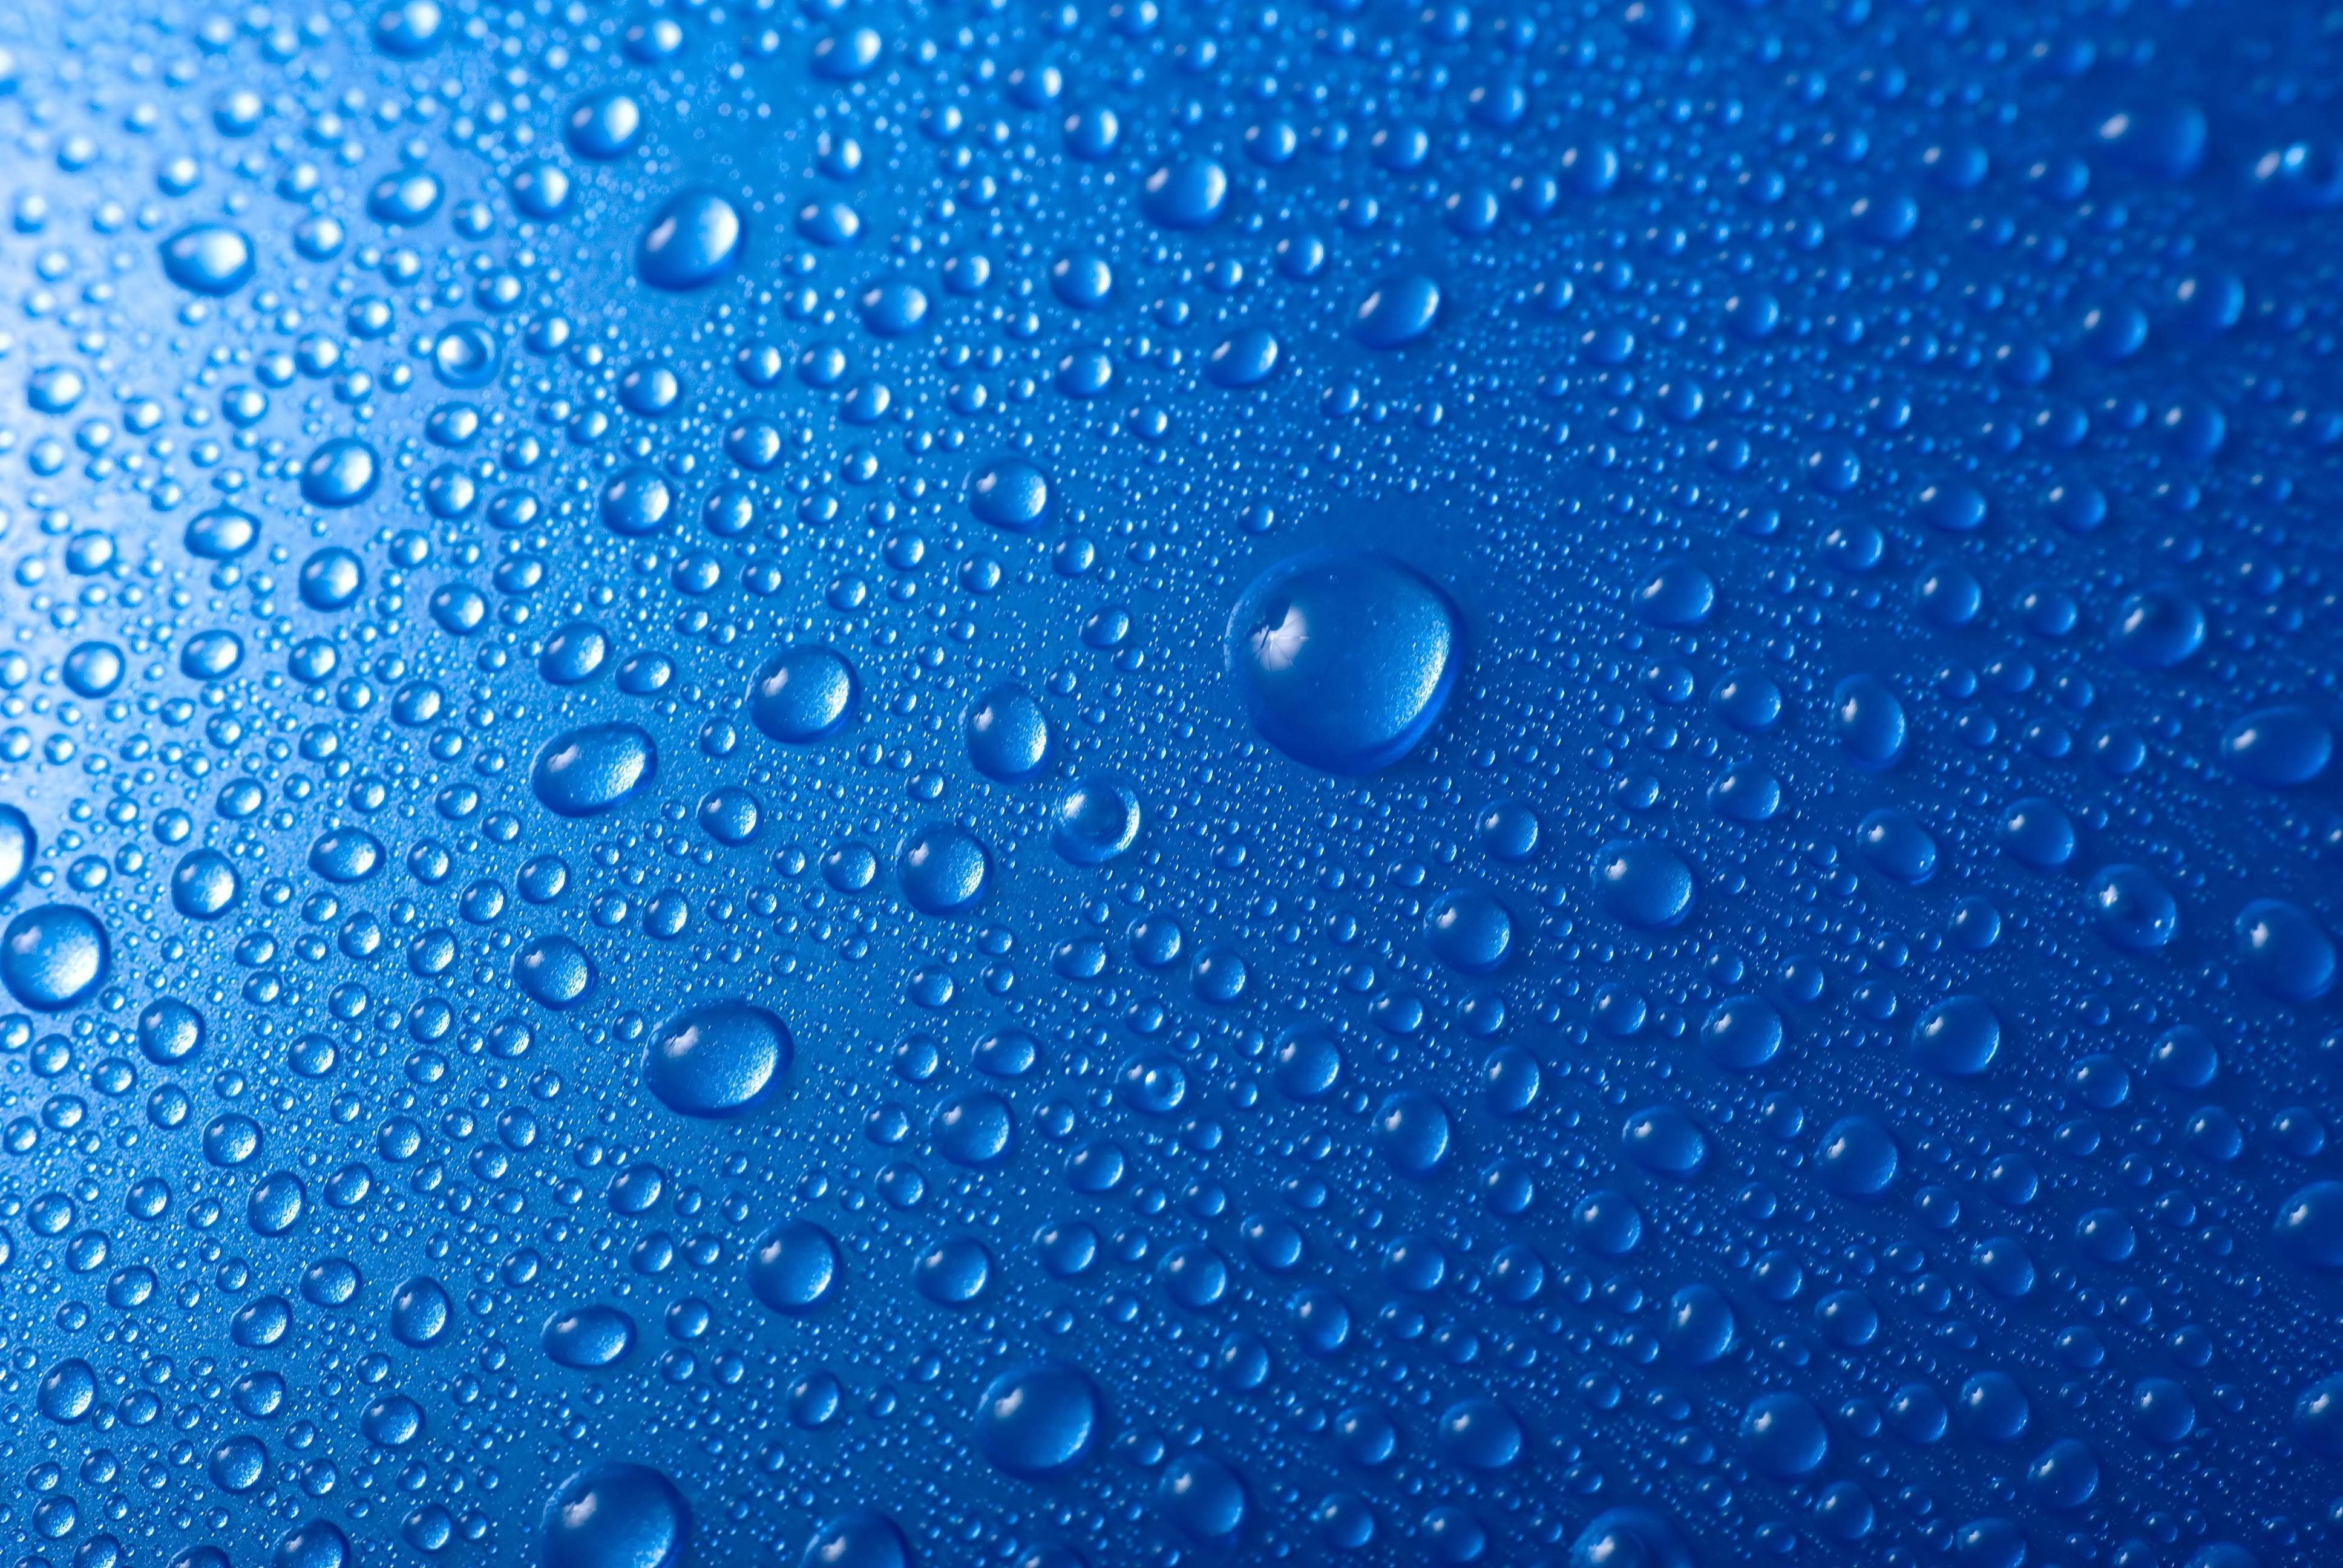 3 gotas de agua fría fondo de pantalla hd,azul,agua,soltar,azul eléctrico,cielo